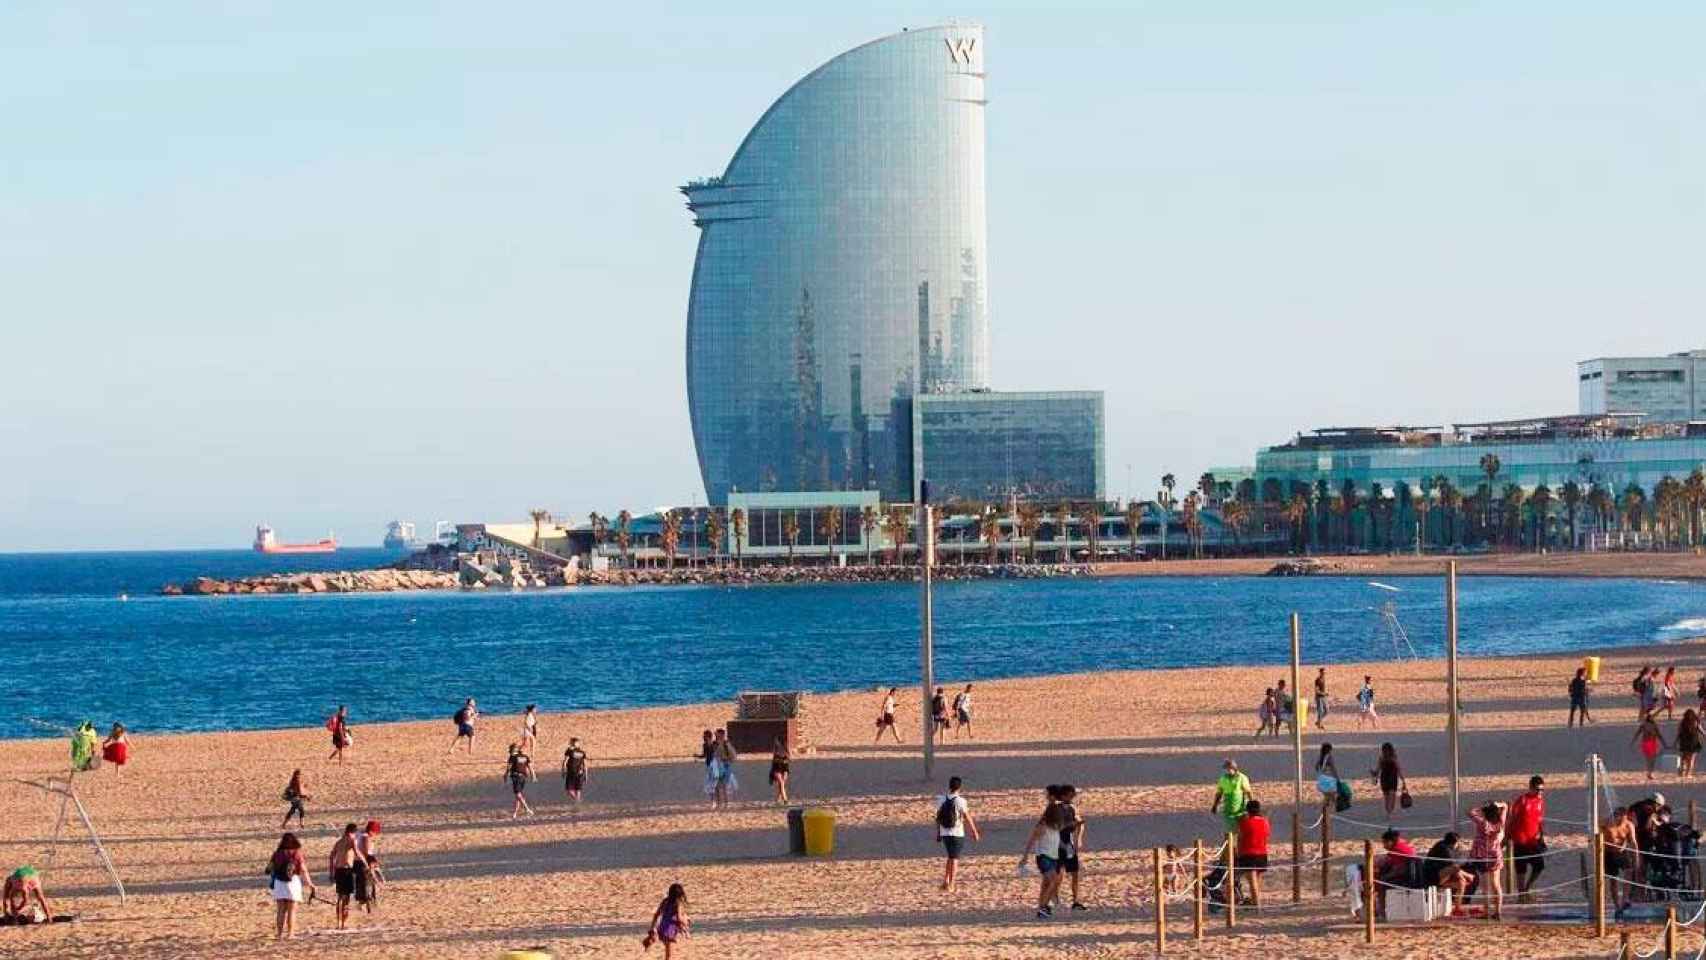 Imagen de una playa de Barcelona con el hotel W Barcelona en el horizonte / EFE